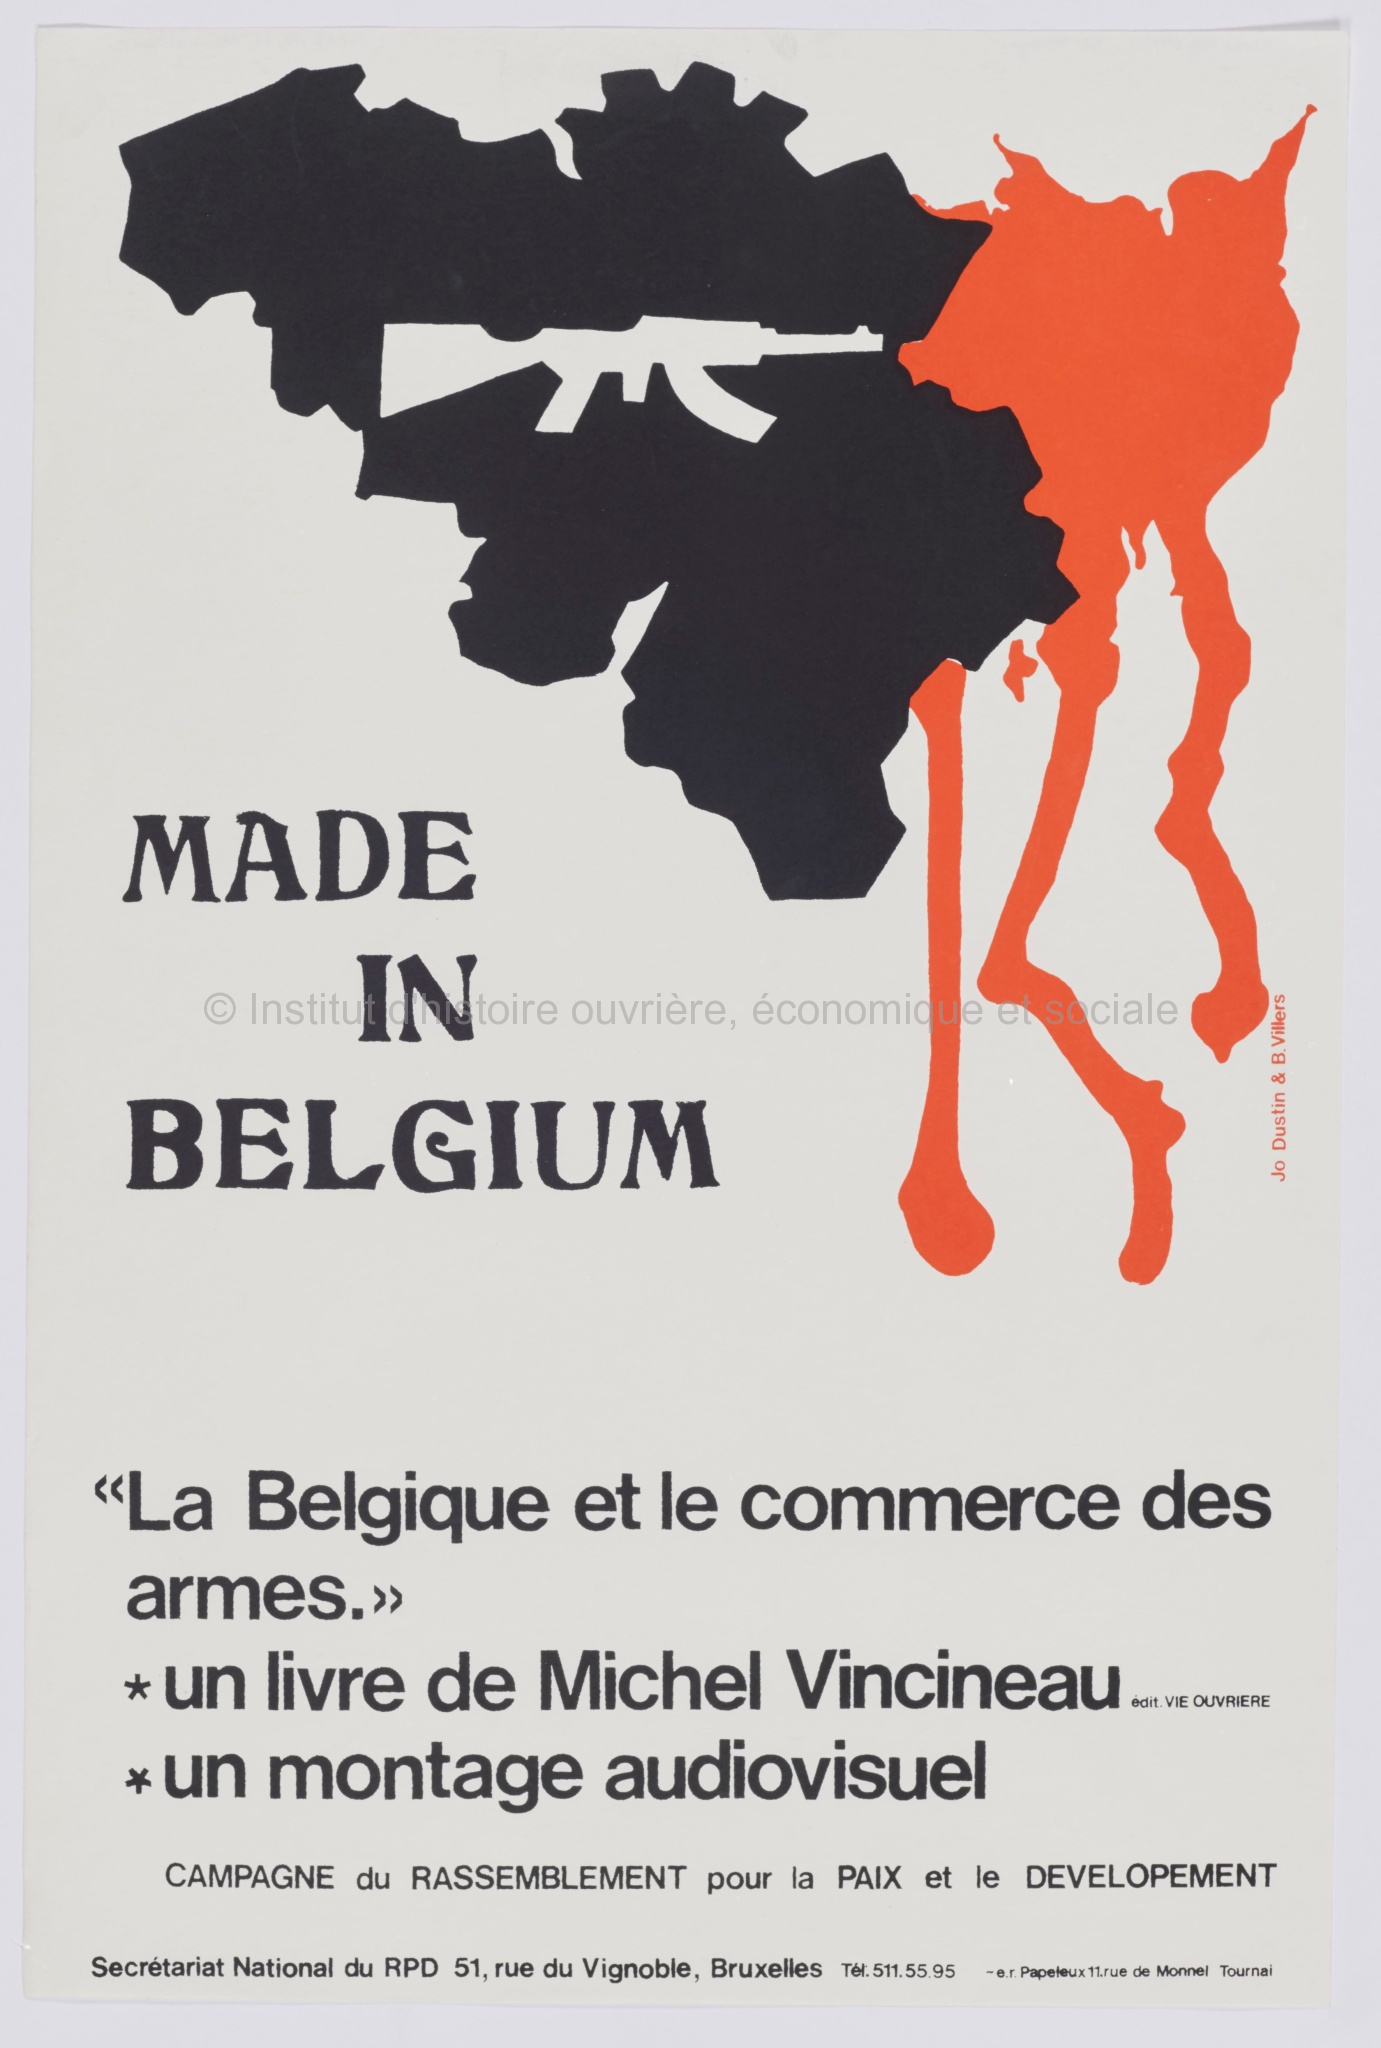 Made in Belgium. "La Belgique et le commerce des armes" un livre de Michel Vincineau - un montage audiovisuel : campagne du Rassemblement pour la paix et le développement